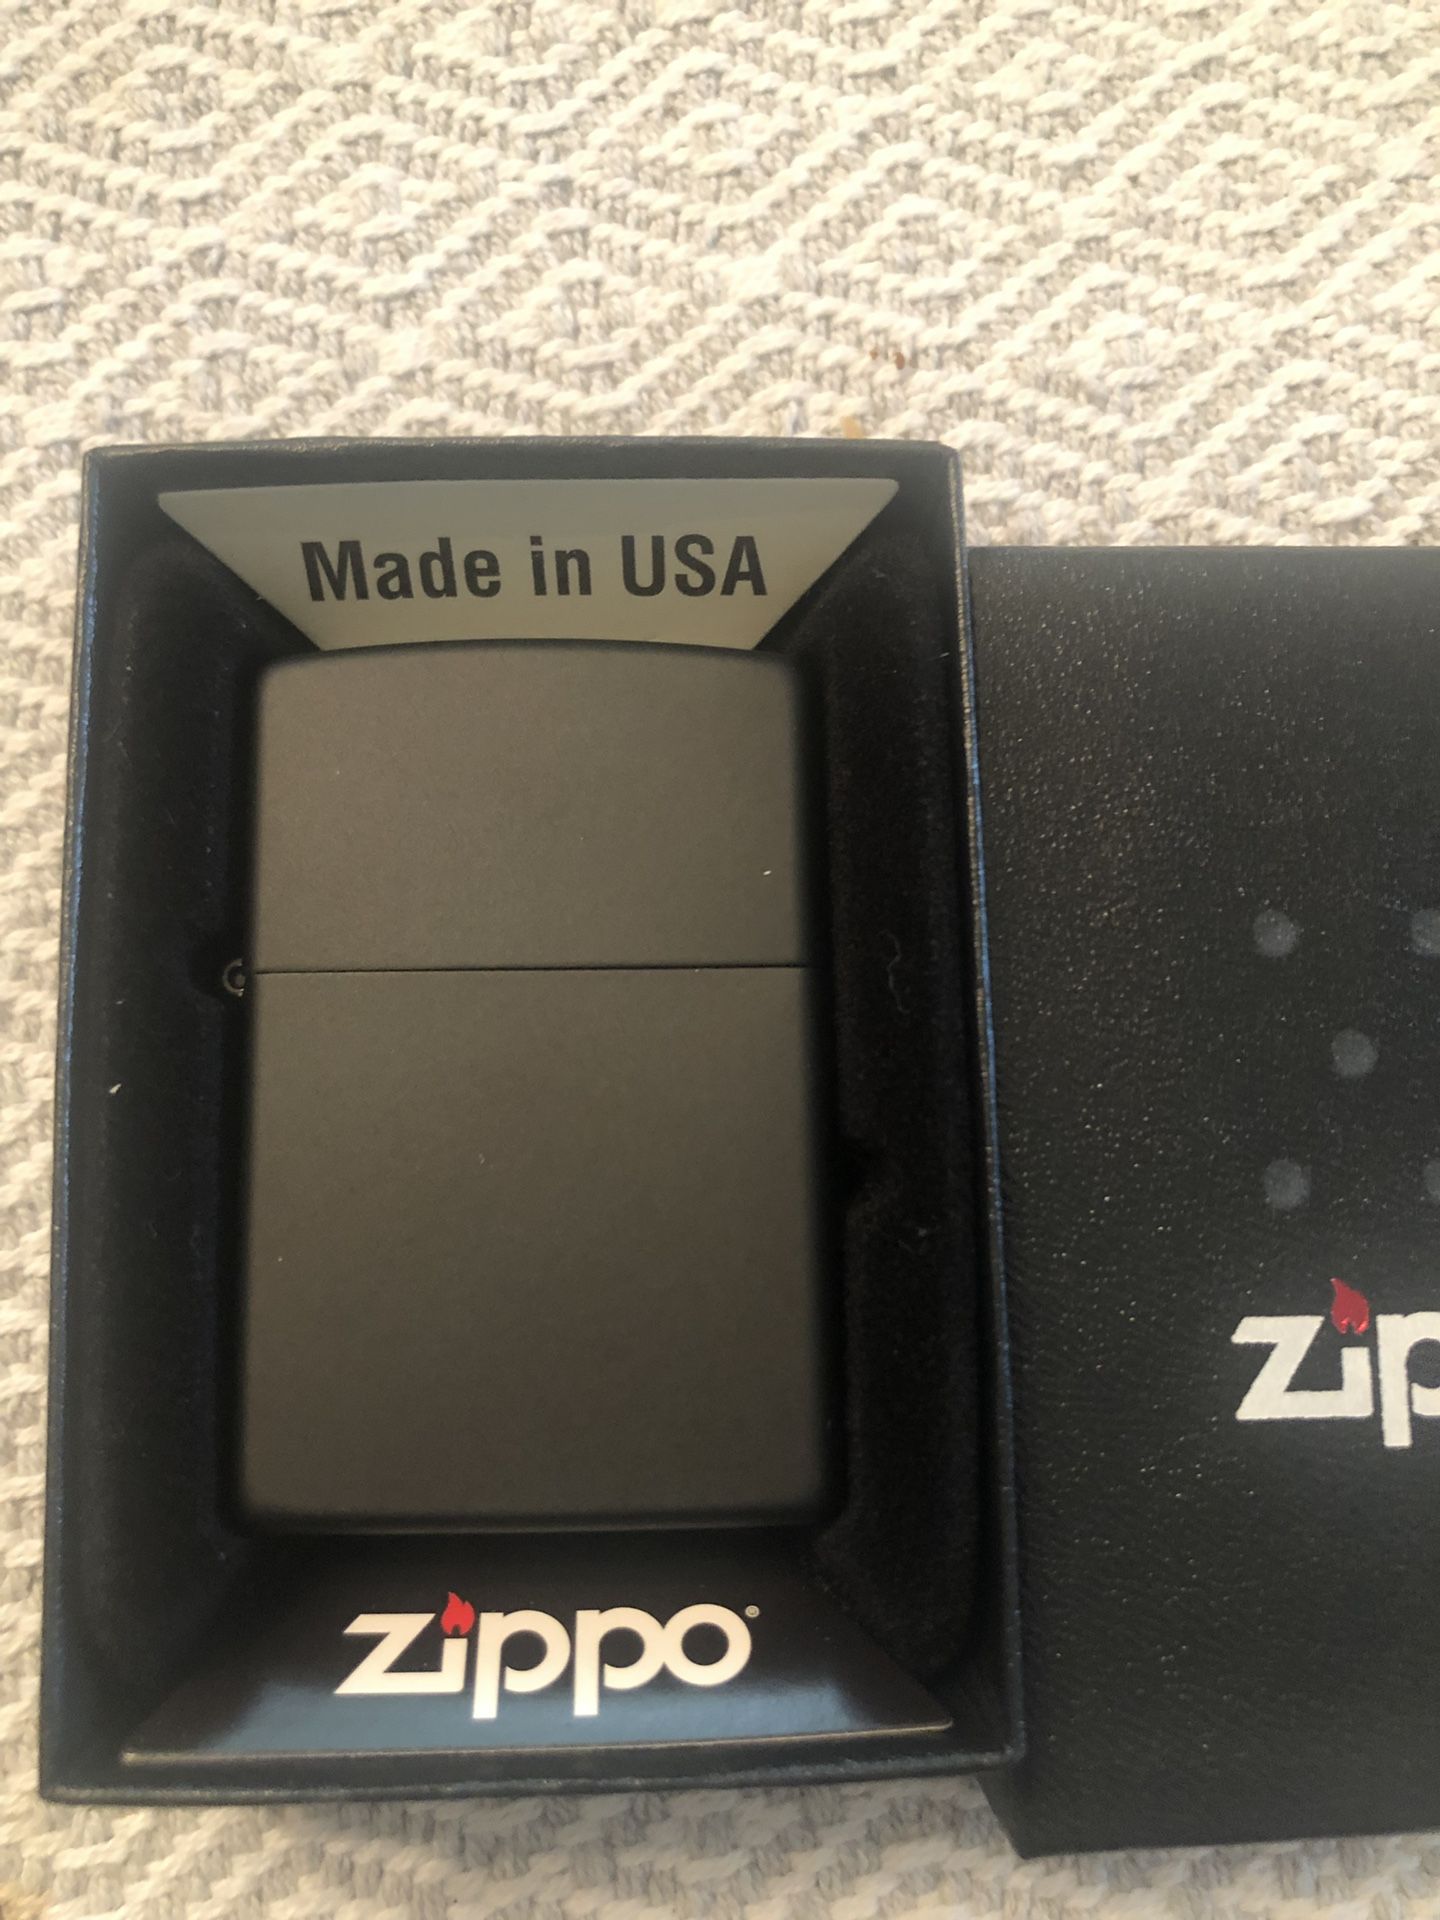 Zippo lighter - brand new black matte